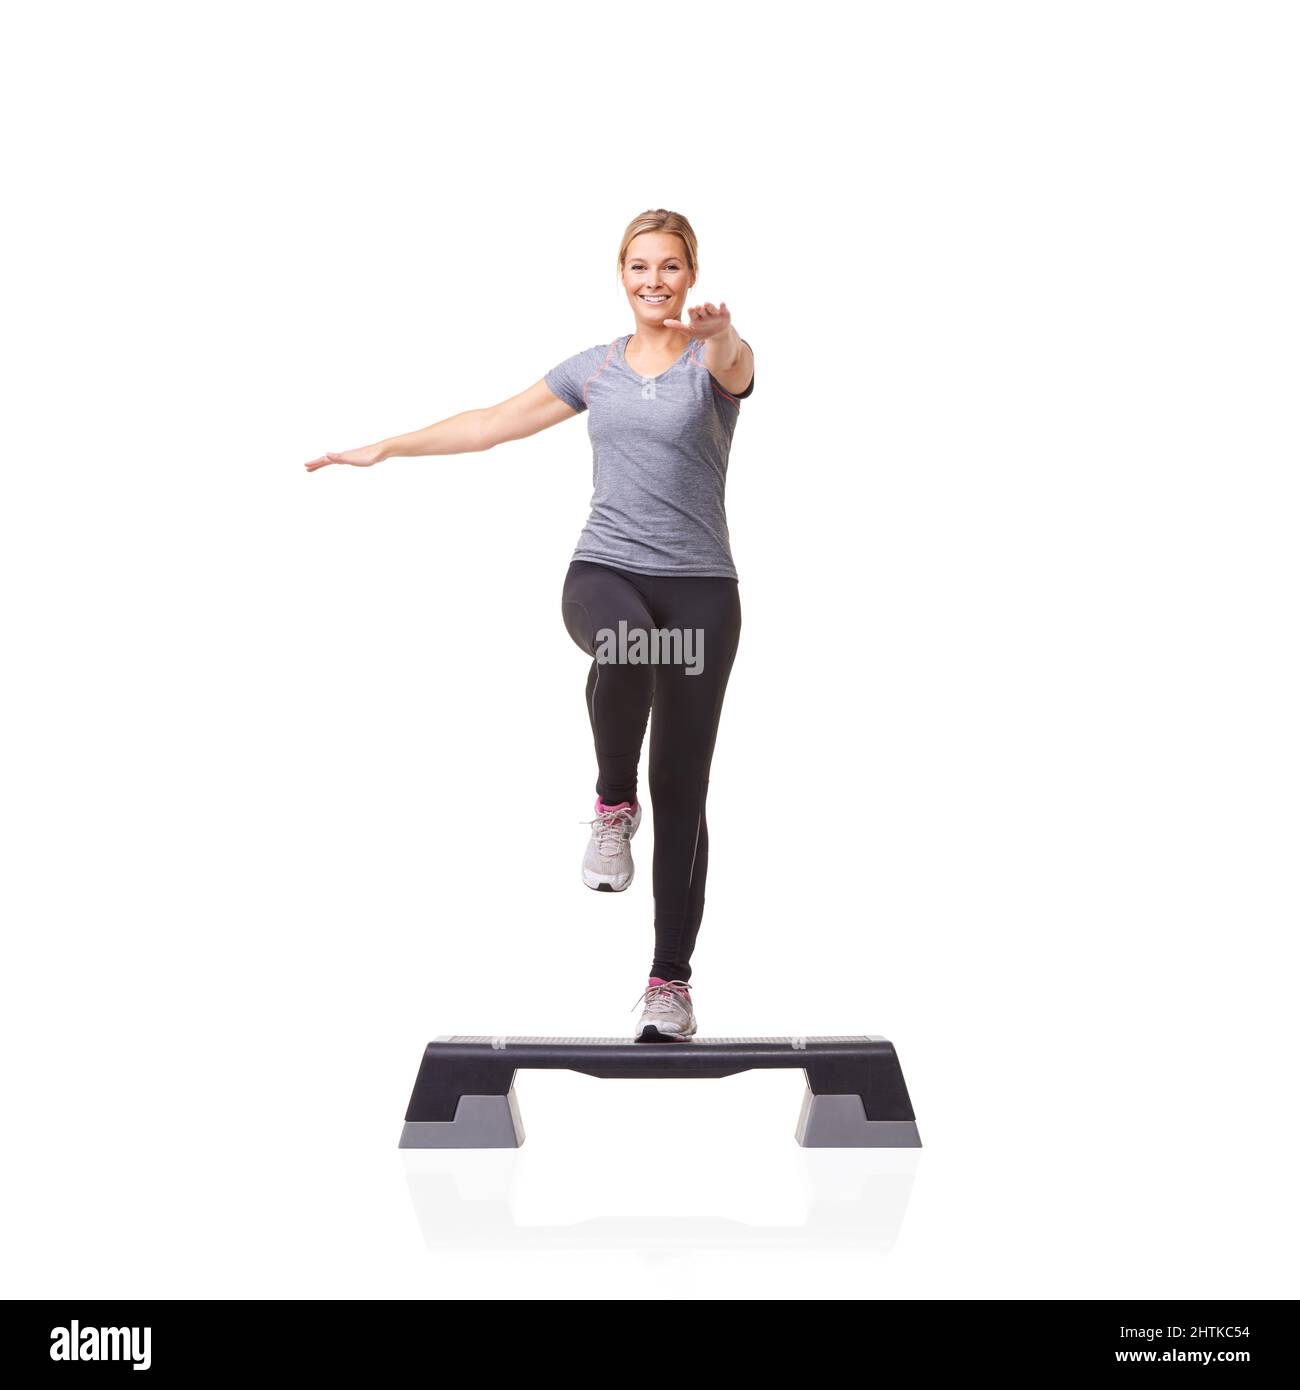 Ihre Gesundheit Schritt für Schritt verbessern. Eine lächelnde junge Frau, die auf einem Aerobic-Schritt vor weißem Hintergrund Aerobic macht. Stockfoto